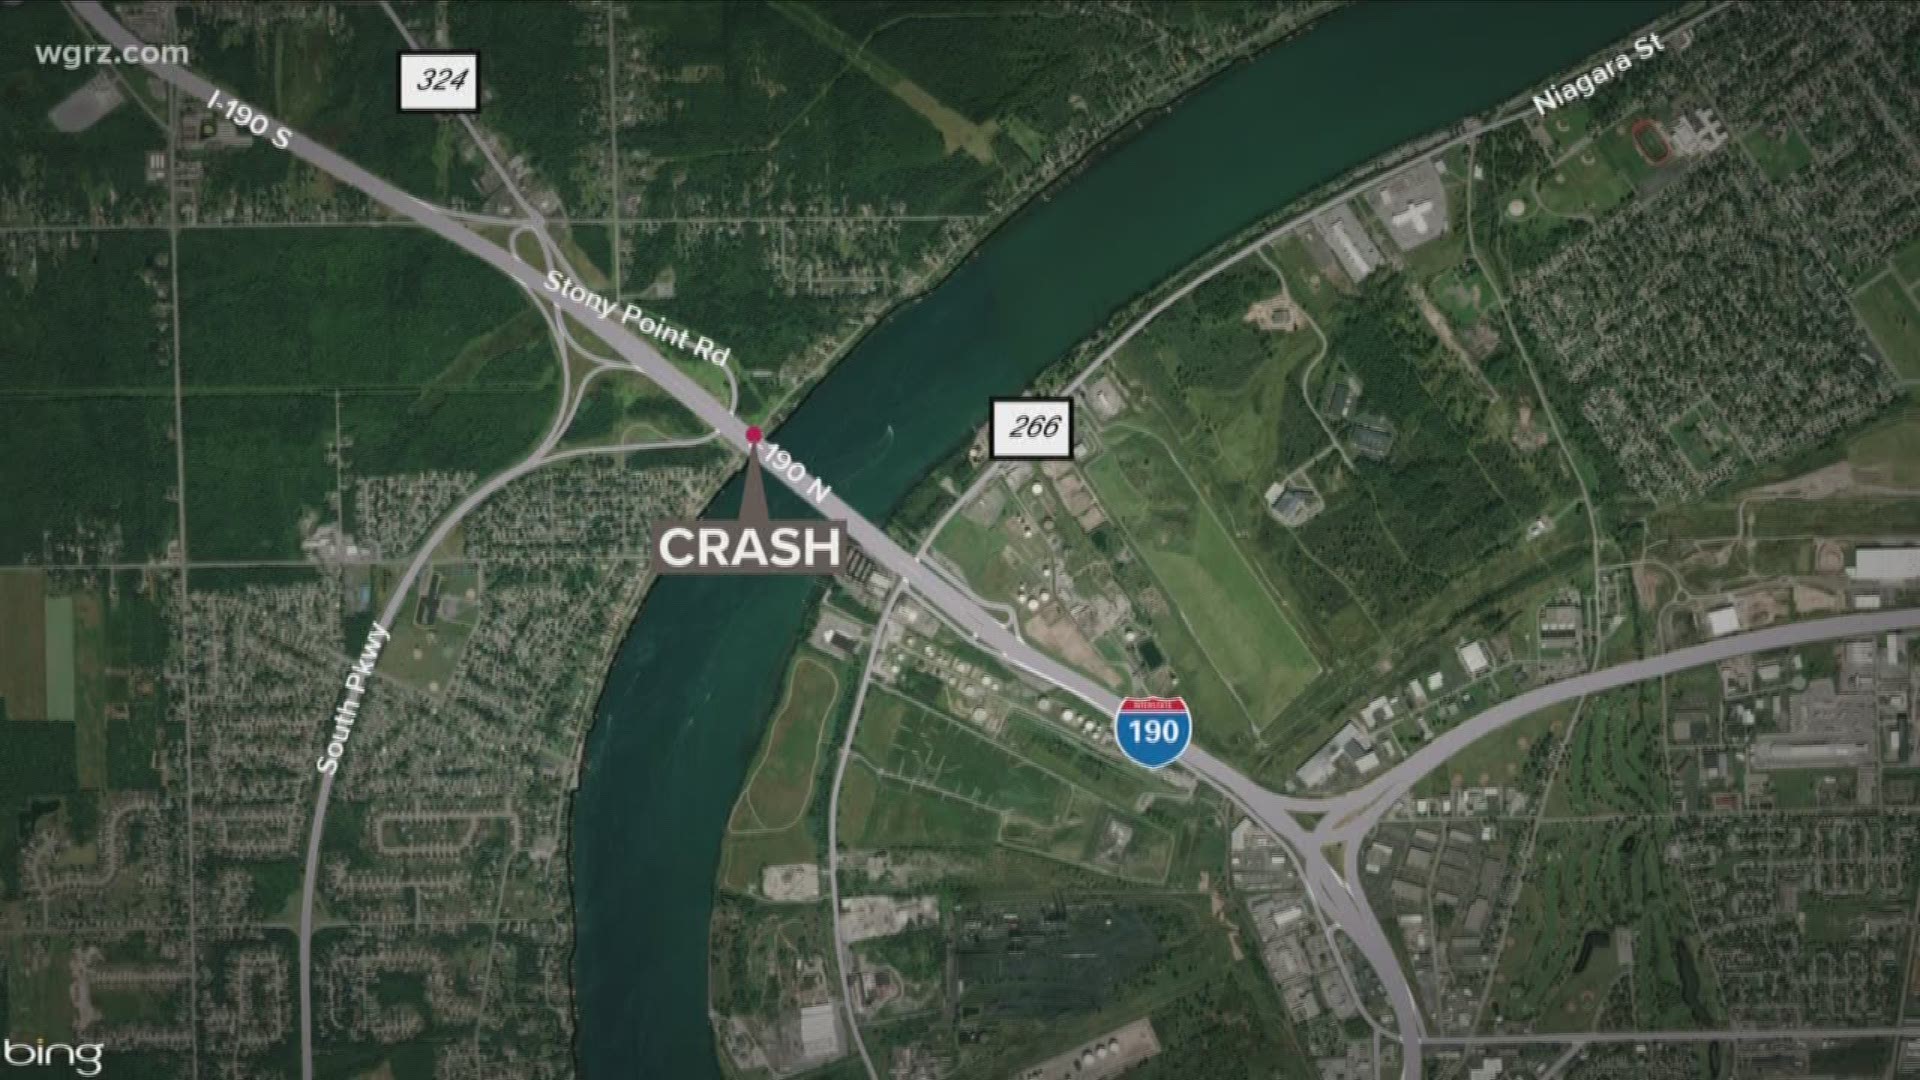 deadly crash on east river road